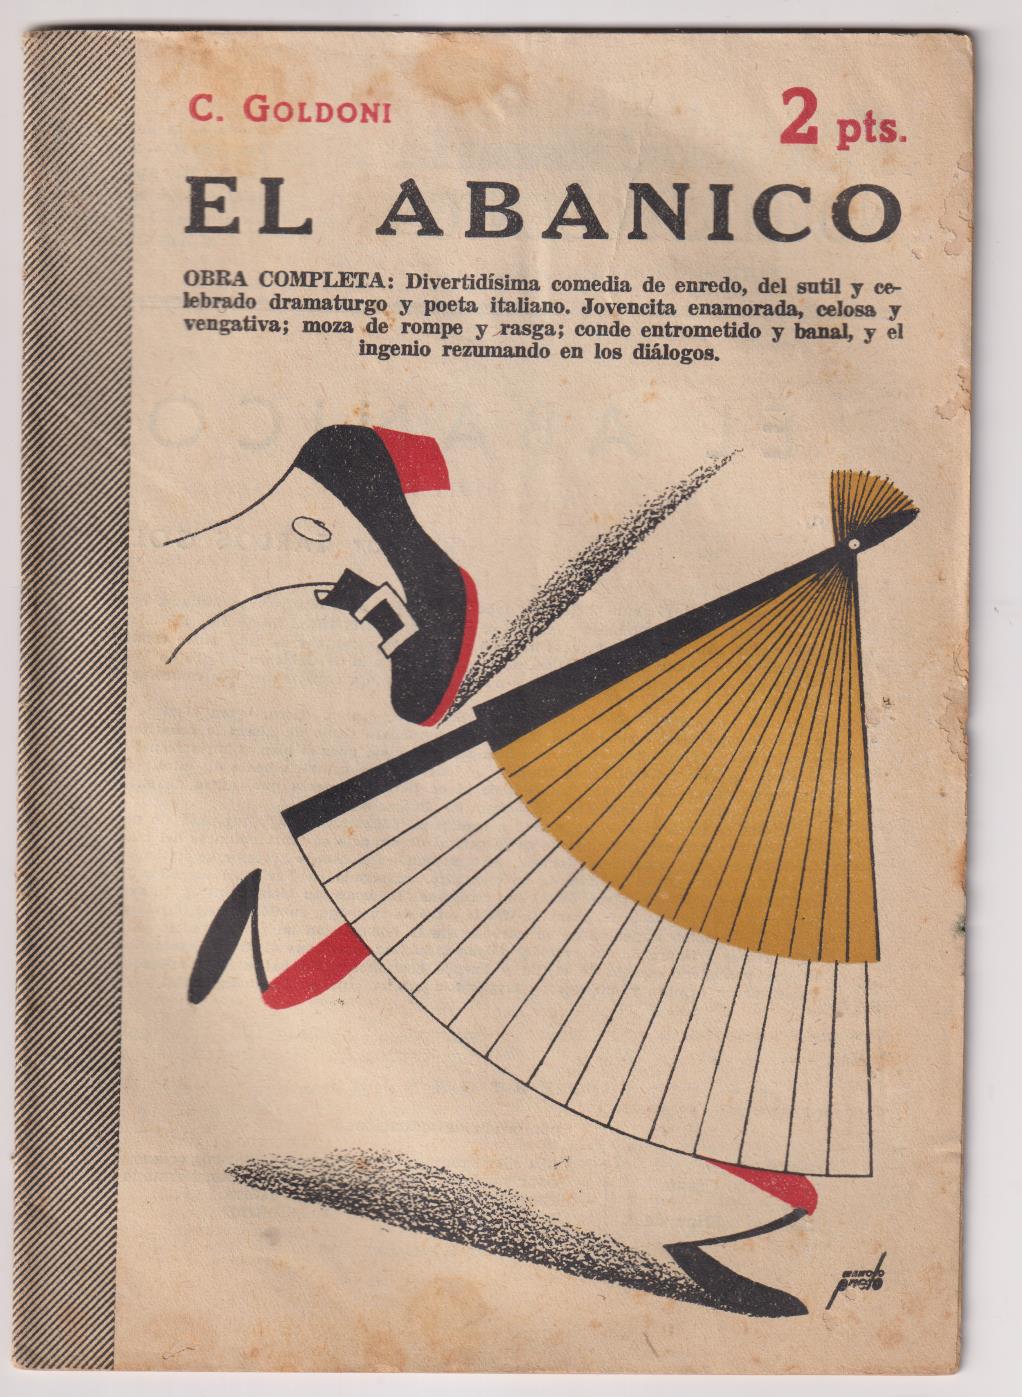 Revista Literaria, Novelas y Cuentos nº 1277. El Abanico por C. Goldoni. Año 1955